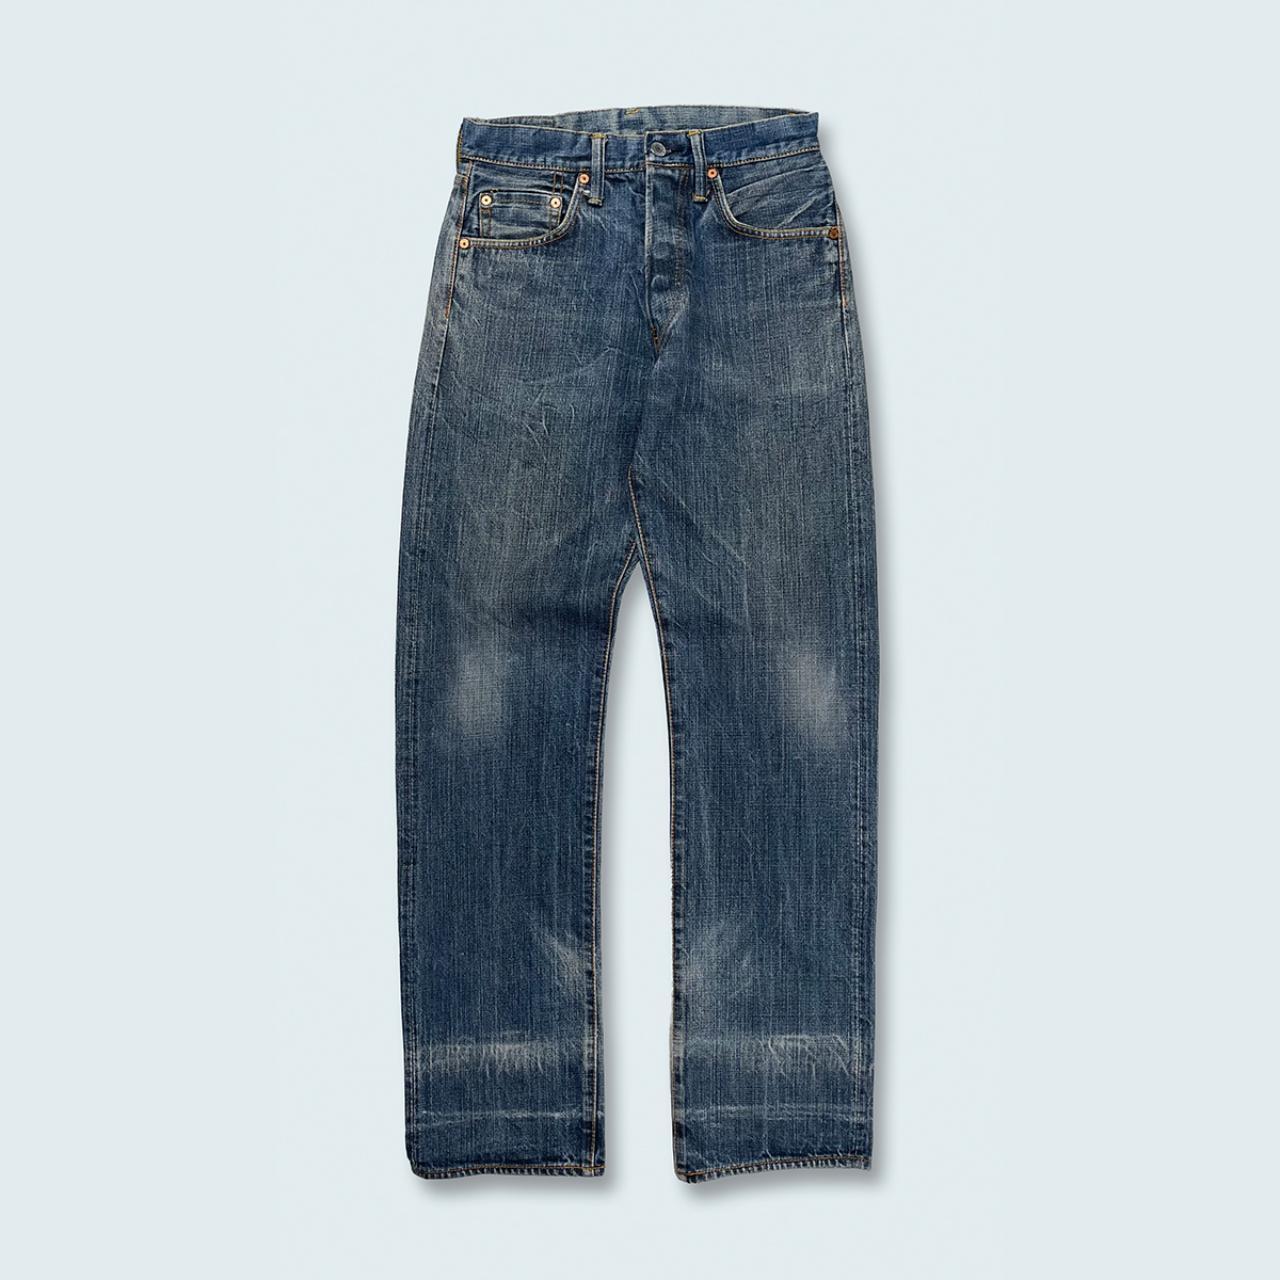 Authentic Vintage Evisu Jeans  (28")